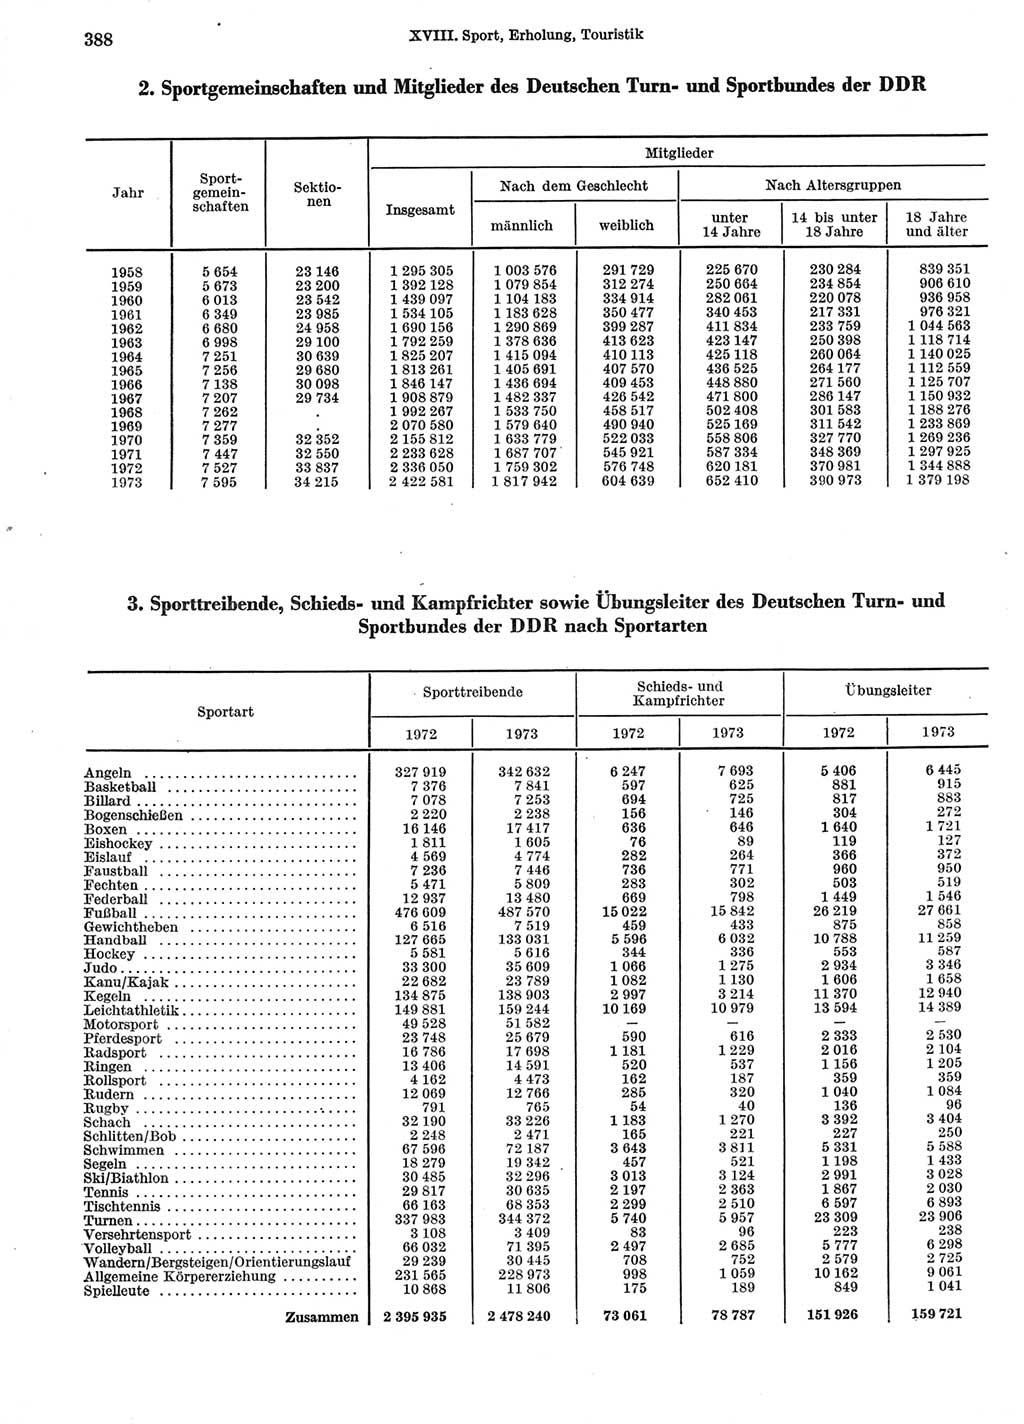 Statistisches Jahrbuch der Deutschen Demokratischen Republik (DDR) 1974, Seite 388 (Stat. Jb. DDR 1974, S. 388)